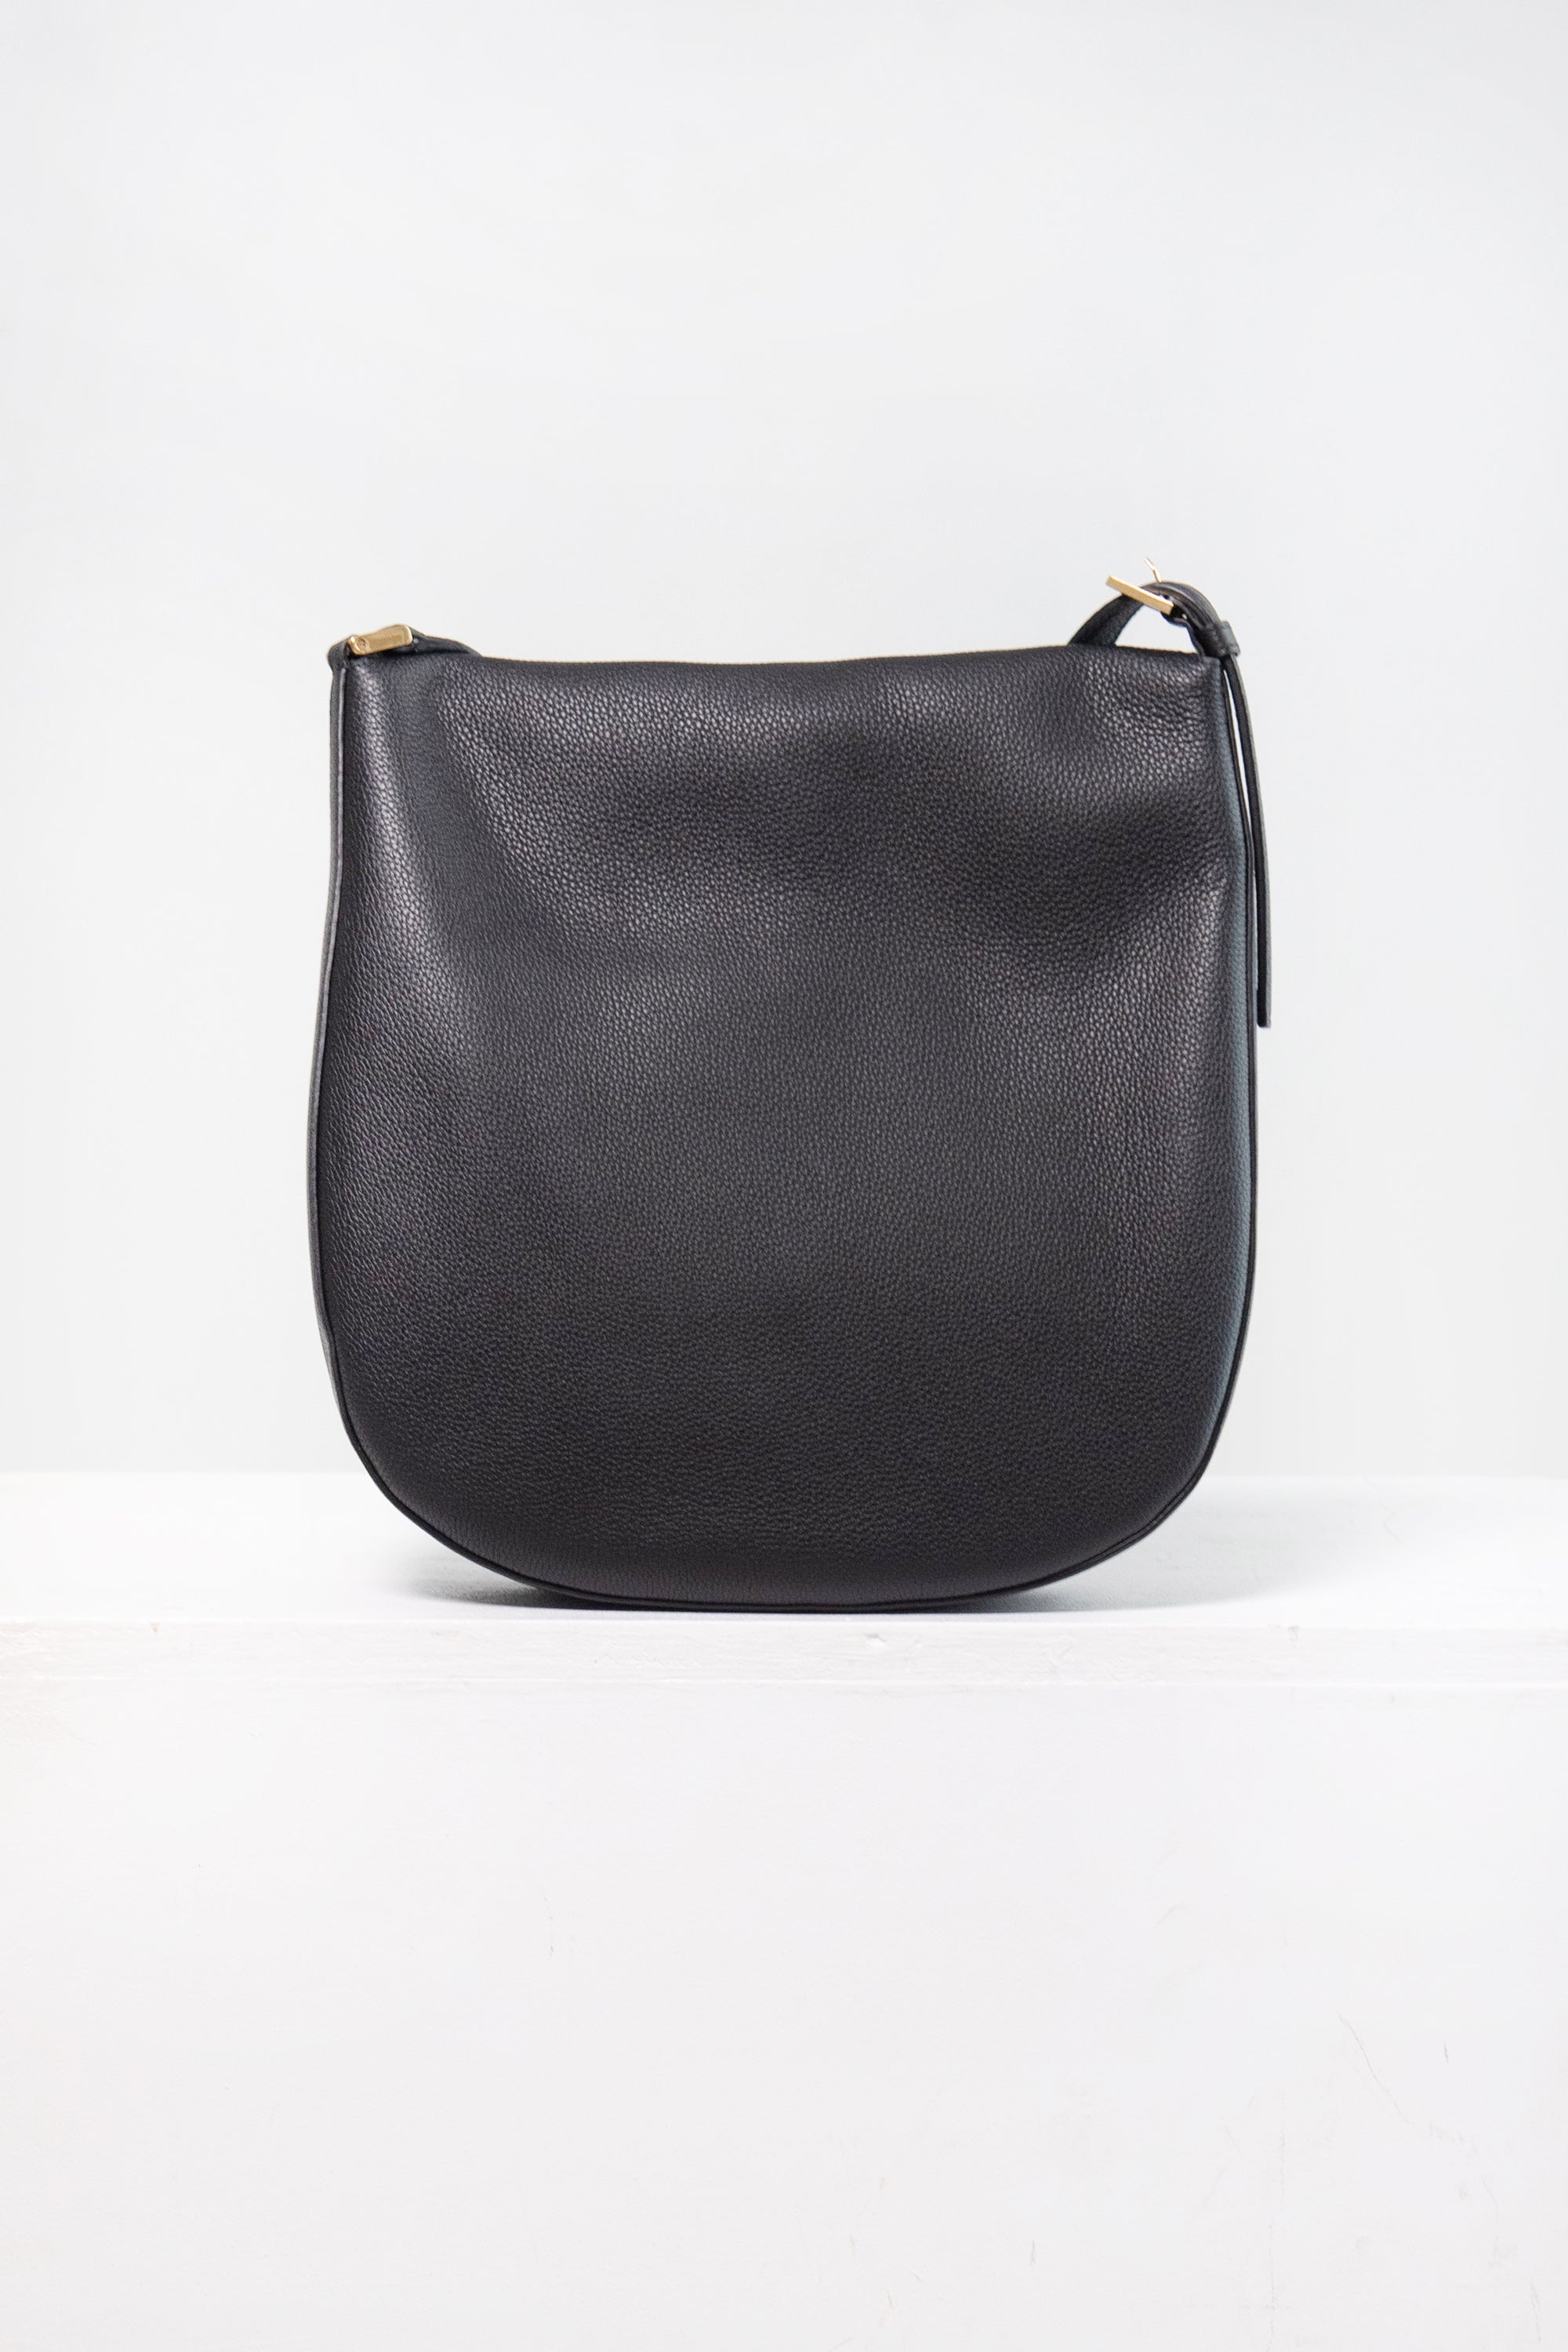 Small Tondo Hobo in Black Leather – Savette